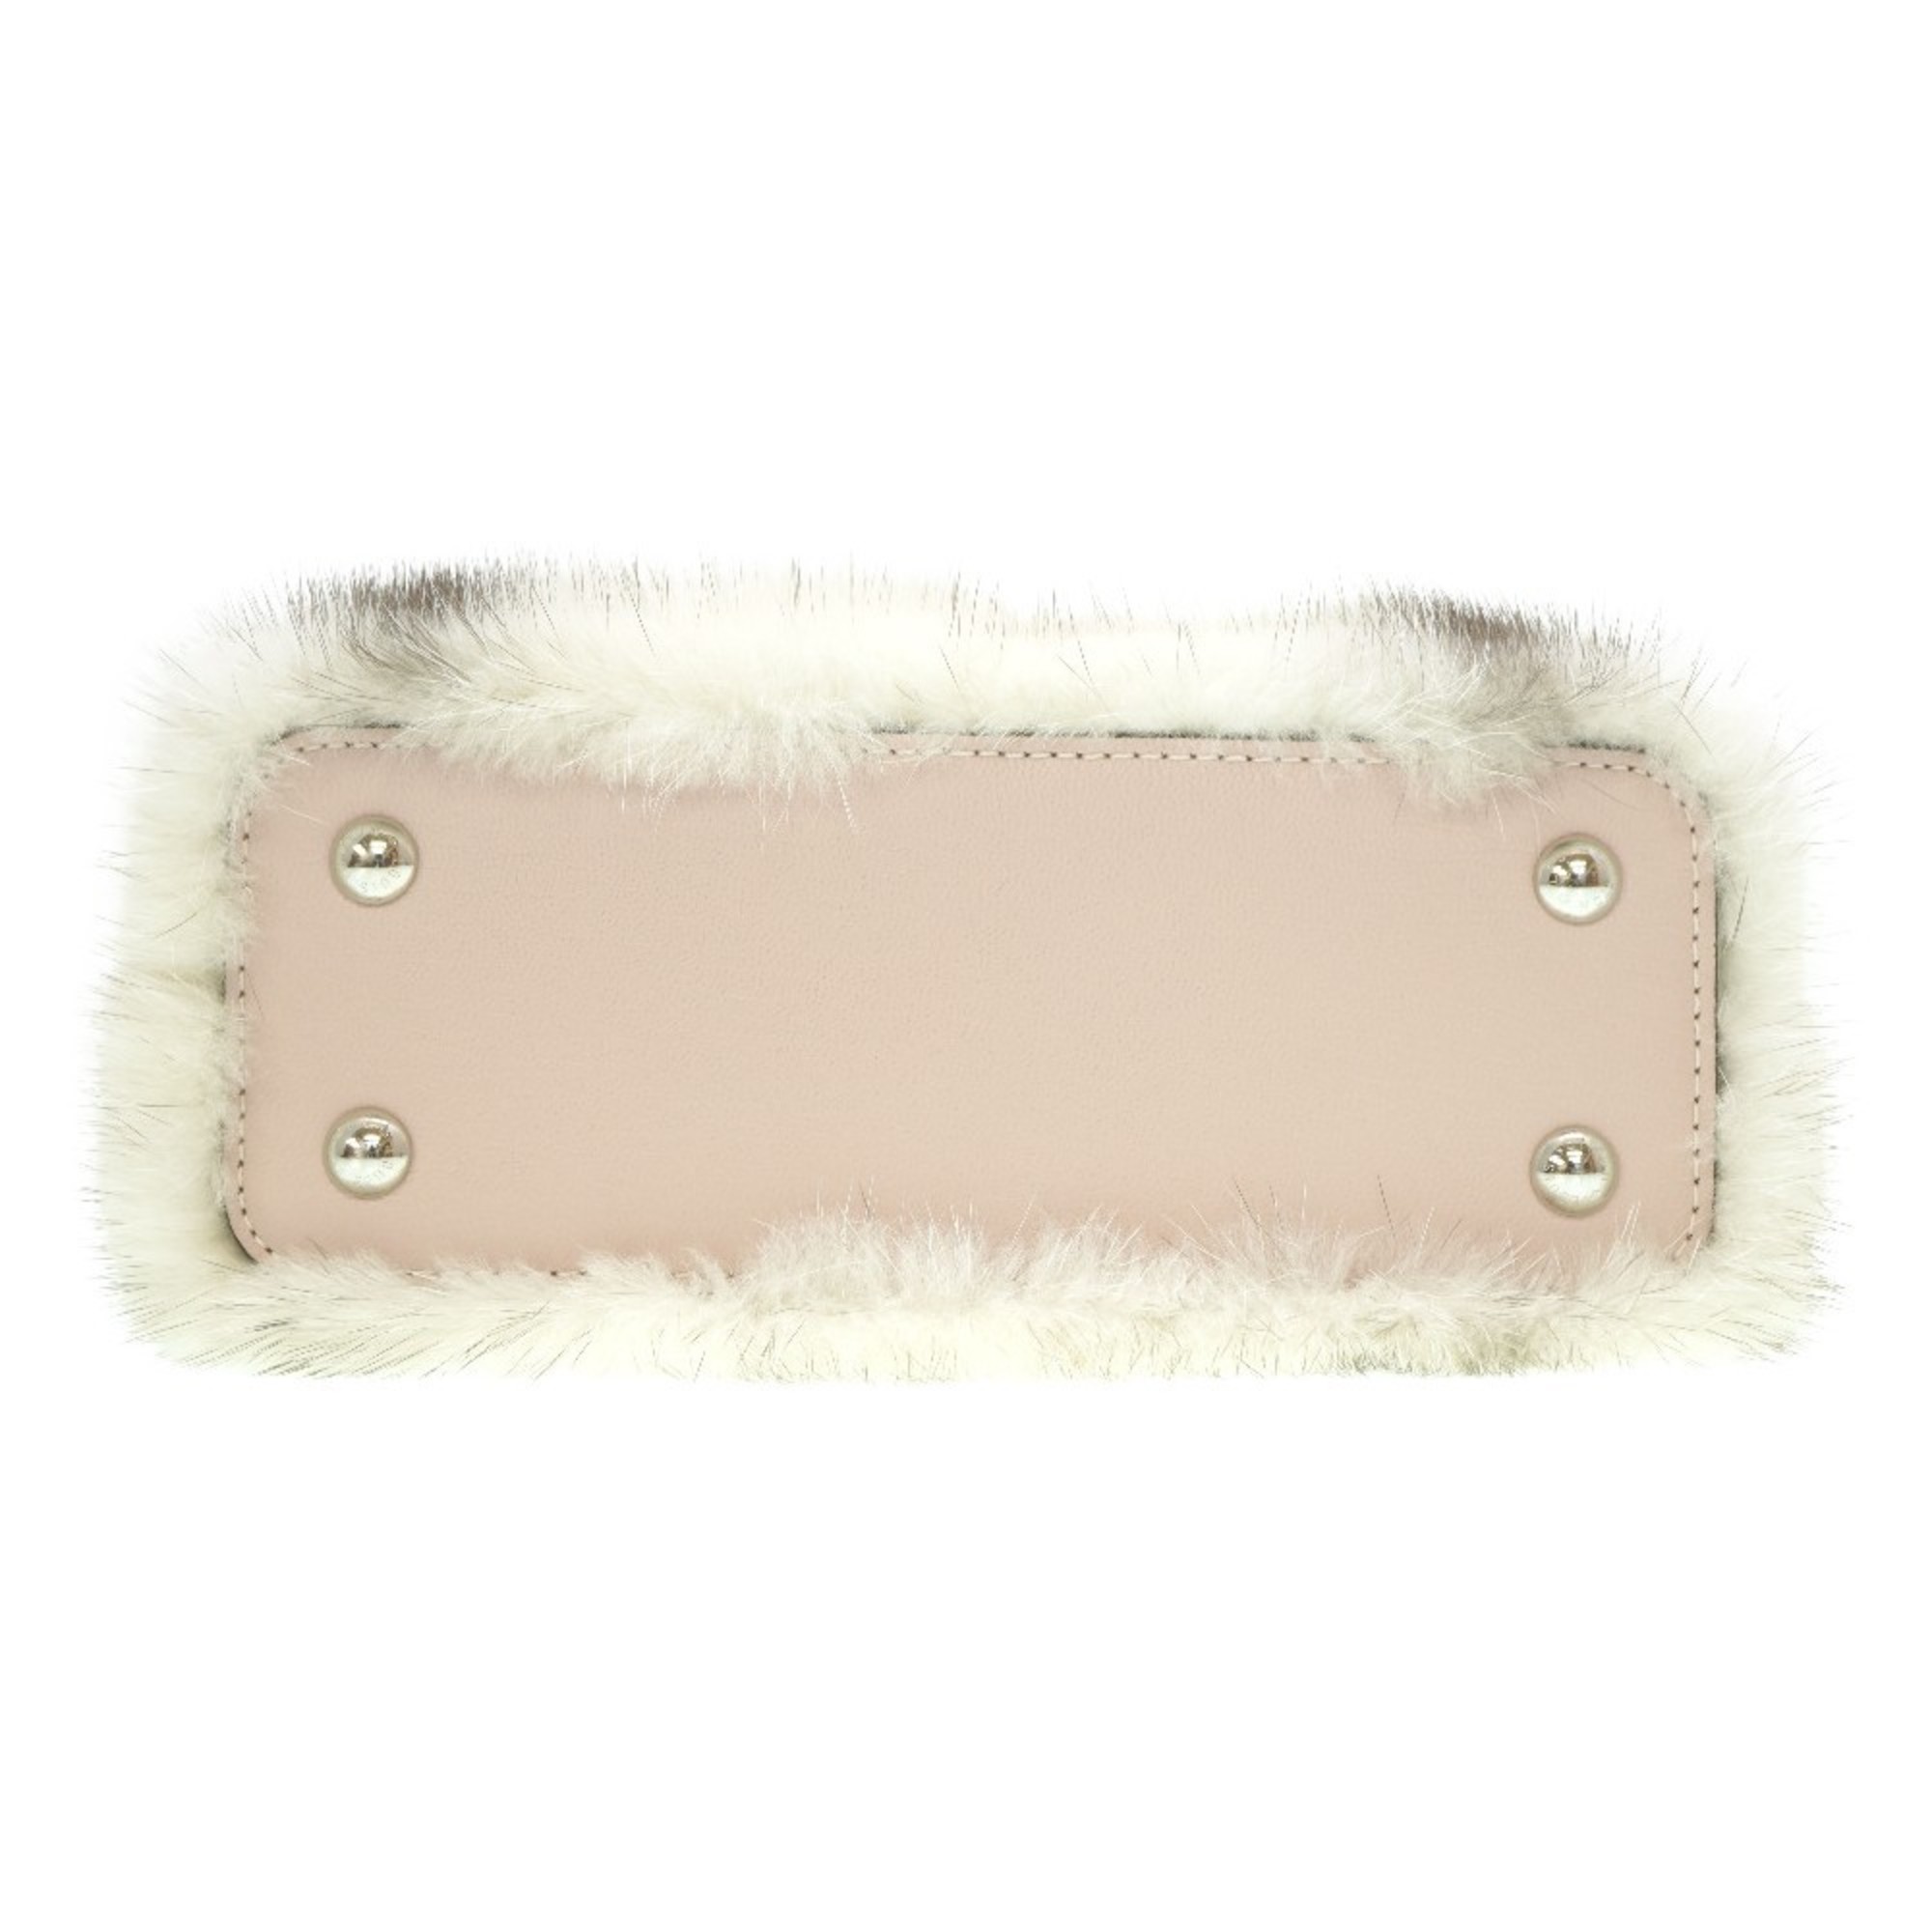 Louis Vuitton Capucines Mink M56916 Shoulder Handbag Pink LV 0051LOUIS VUITTON with shoulder strap